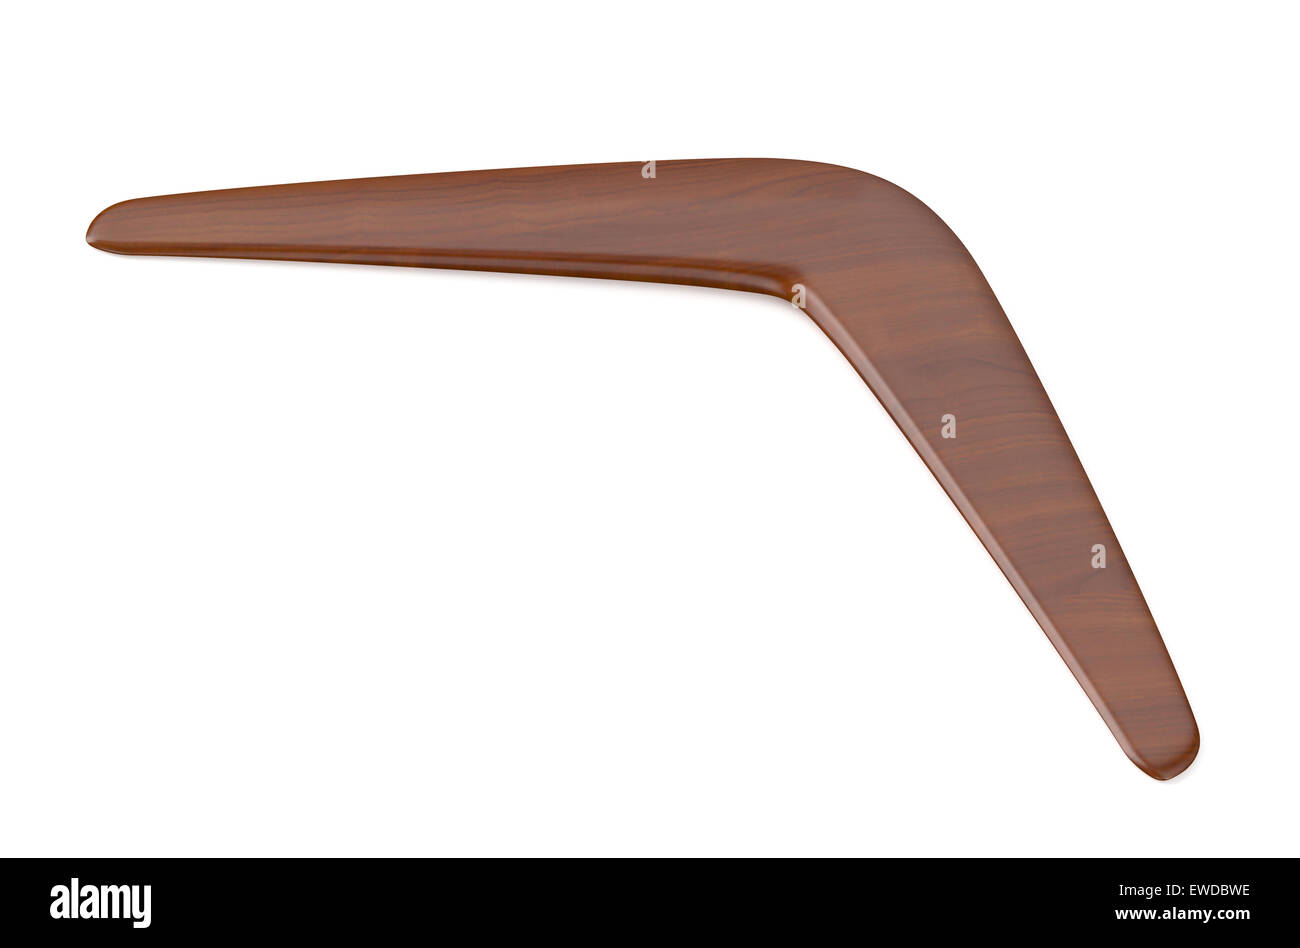 wooden returning boomerang isolated on white background Stock Photo